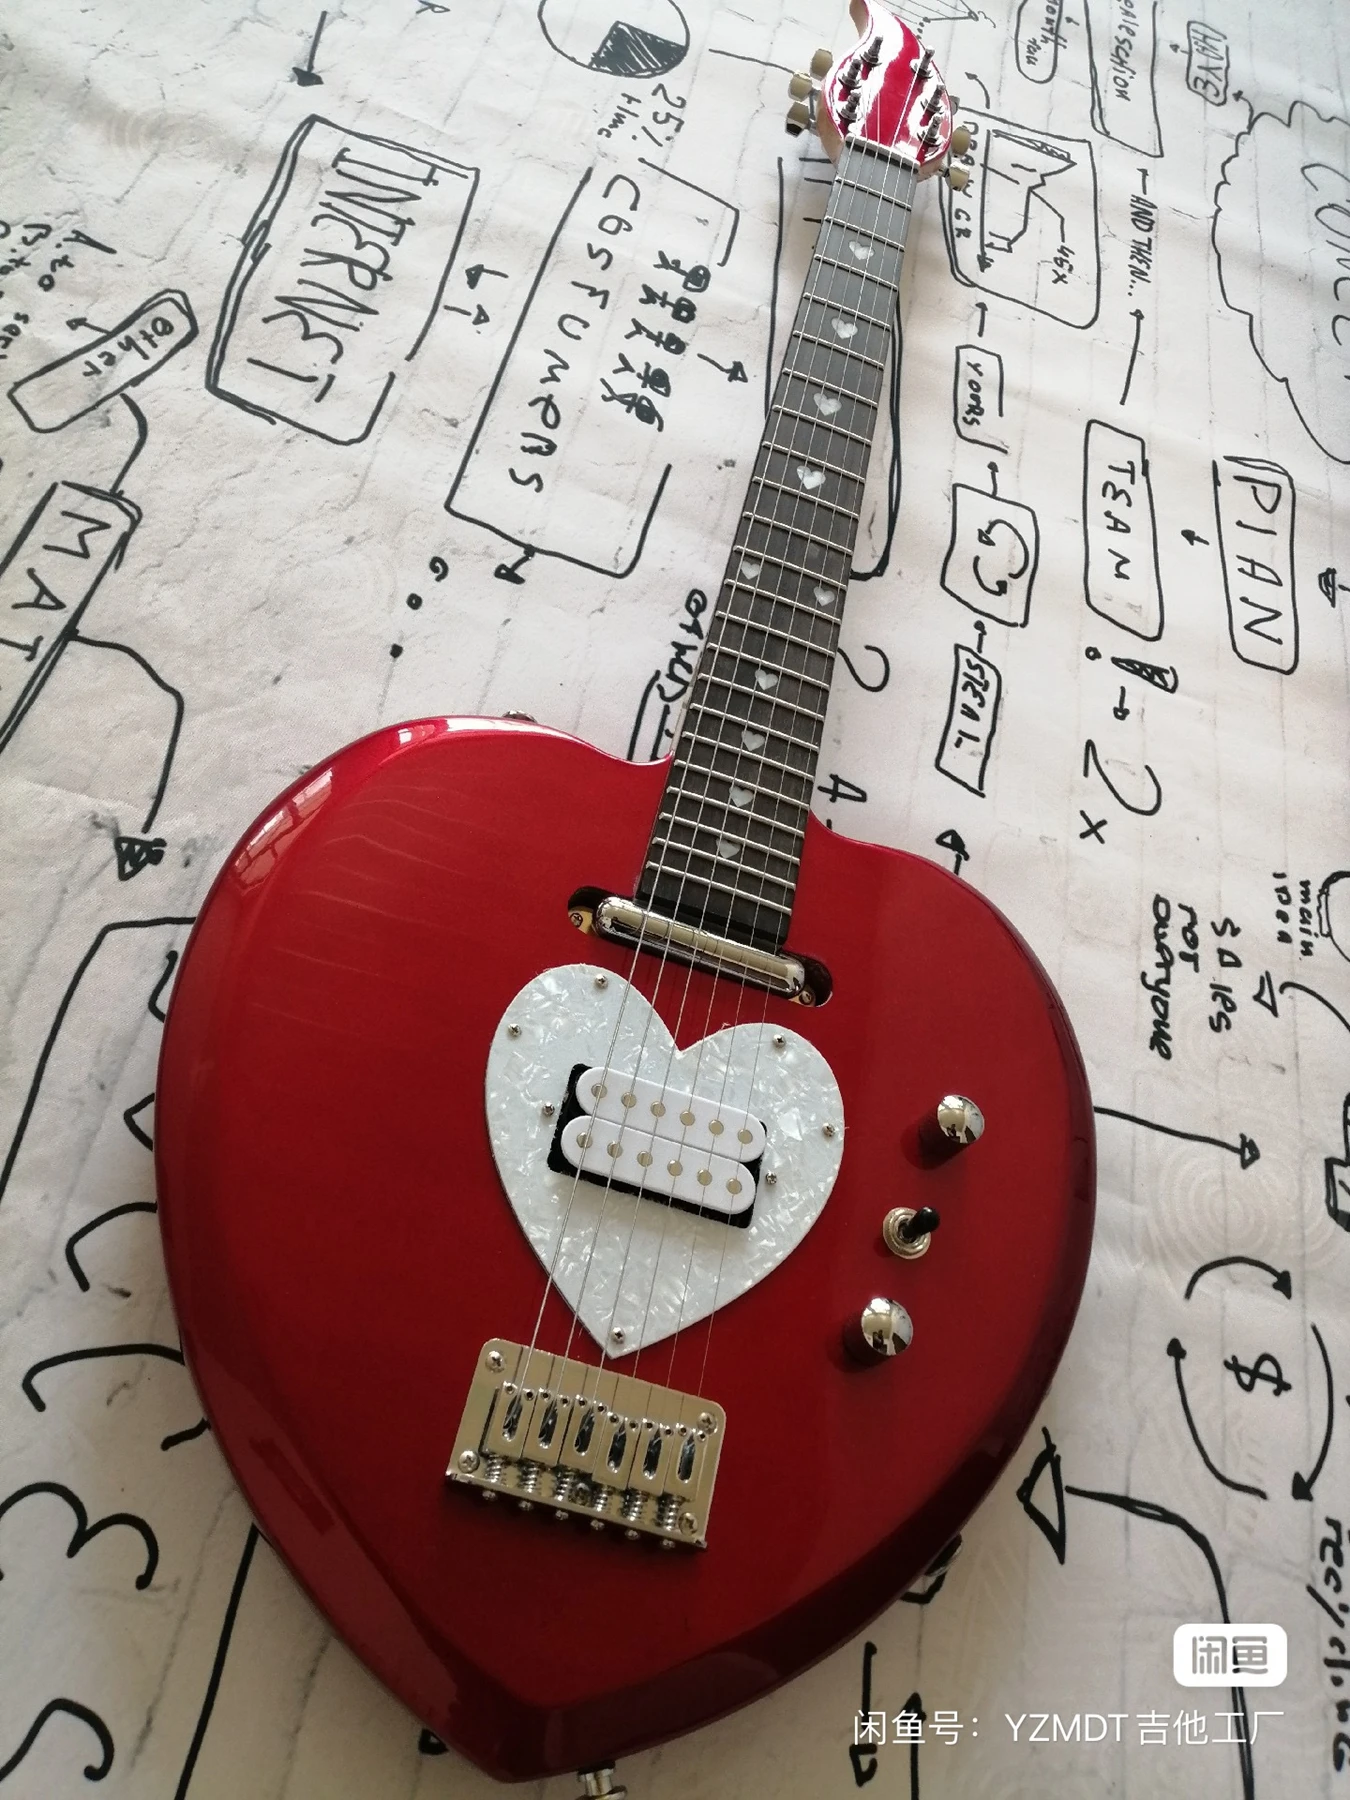 

Красное сердечко, древесина с сердечником цветущего персика, самая продаваемая гитара, серебряные аксессуары, гарантия качества, инвентарь гитары